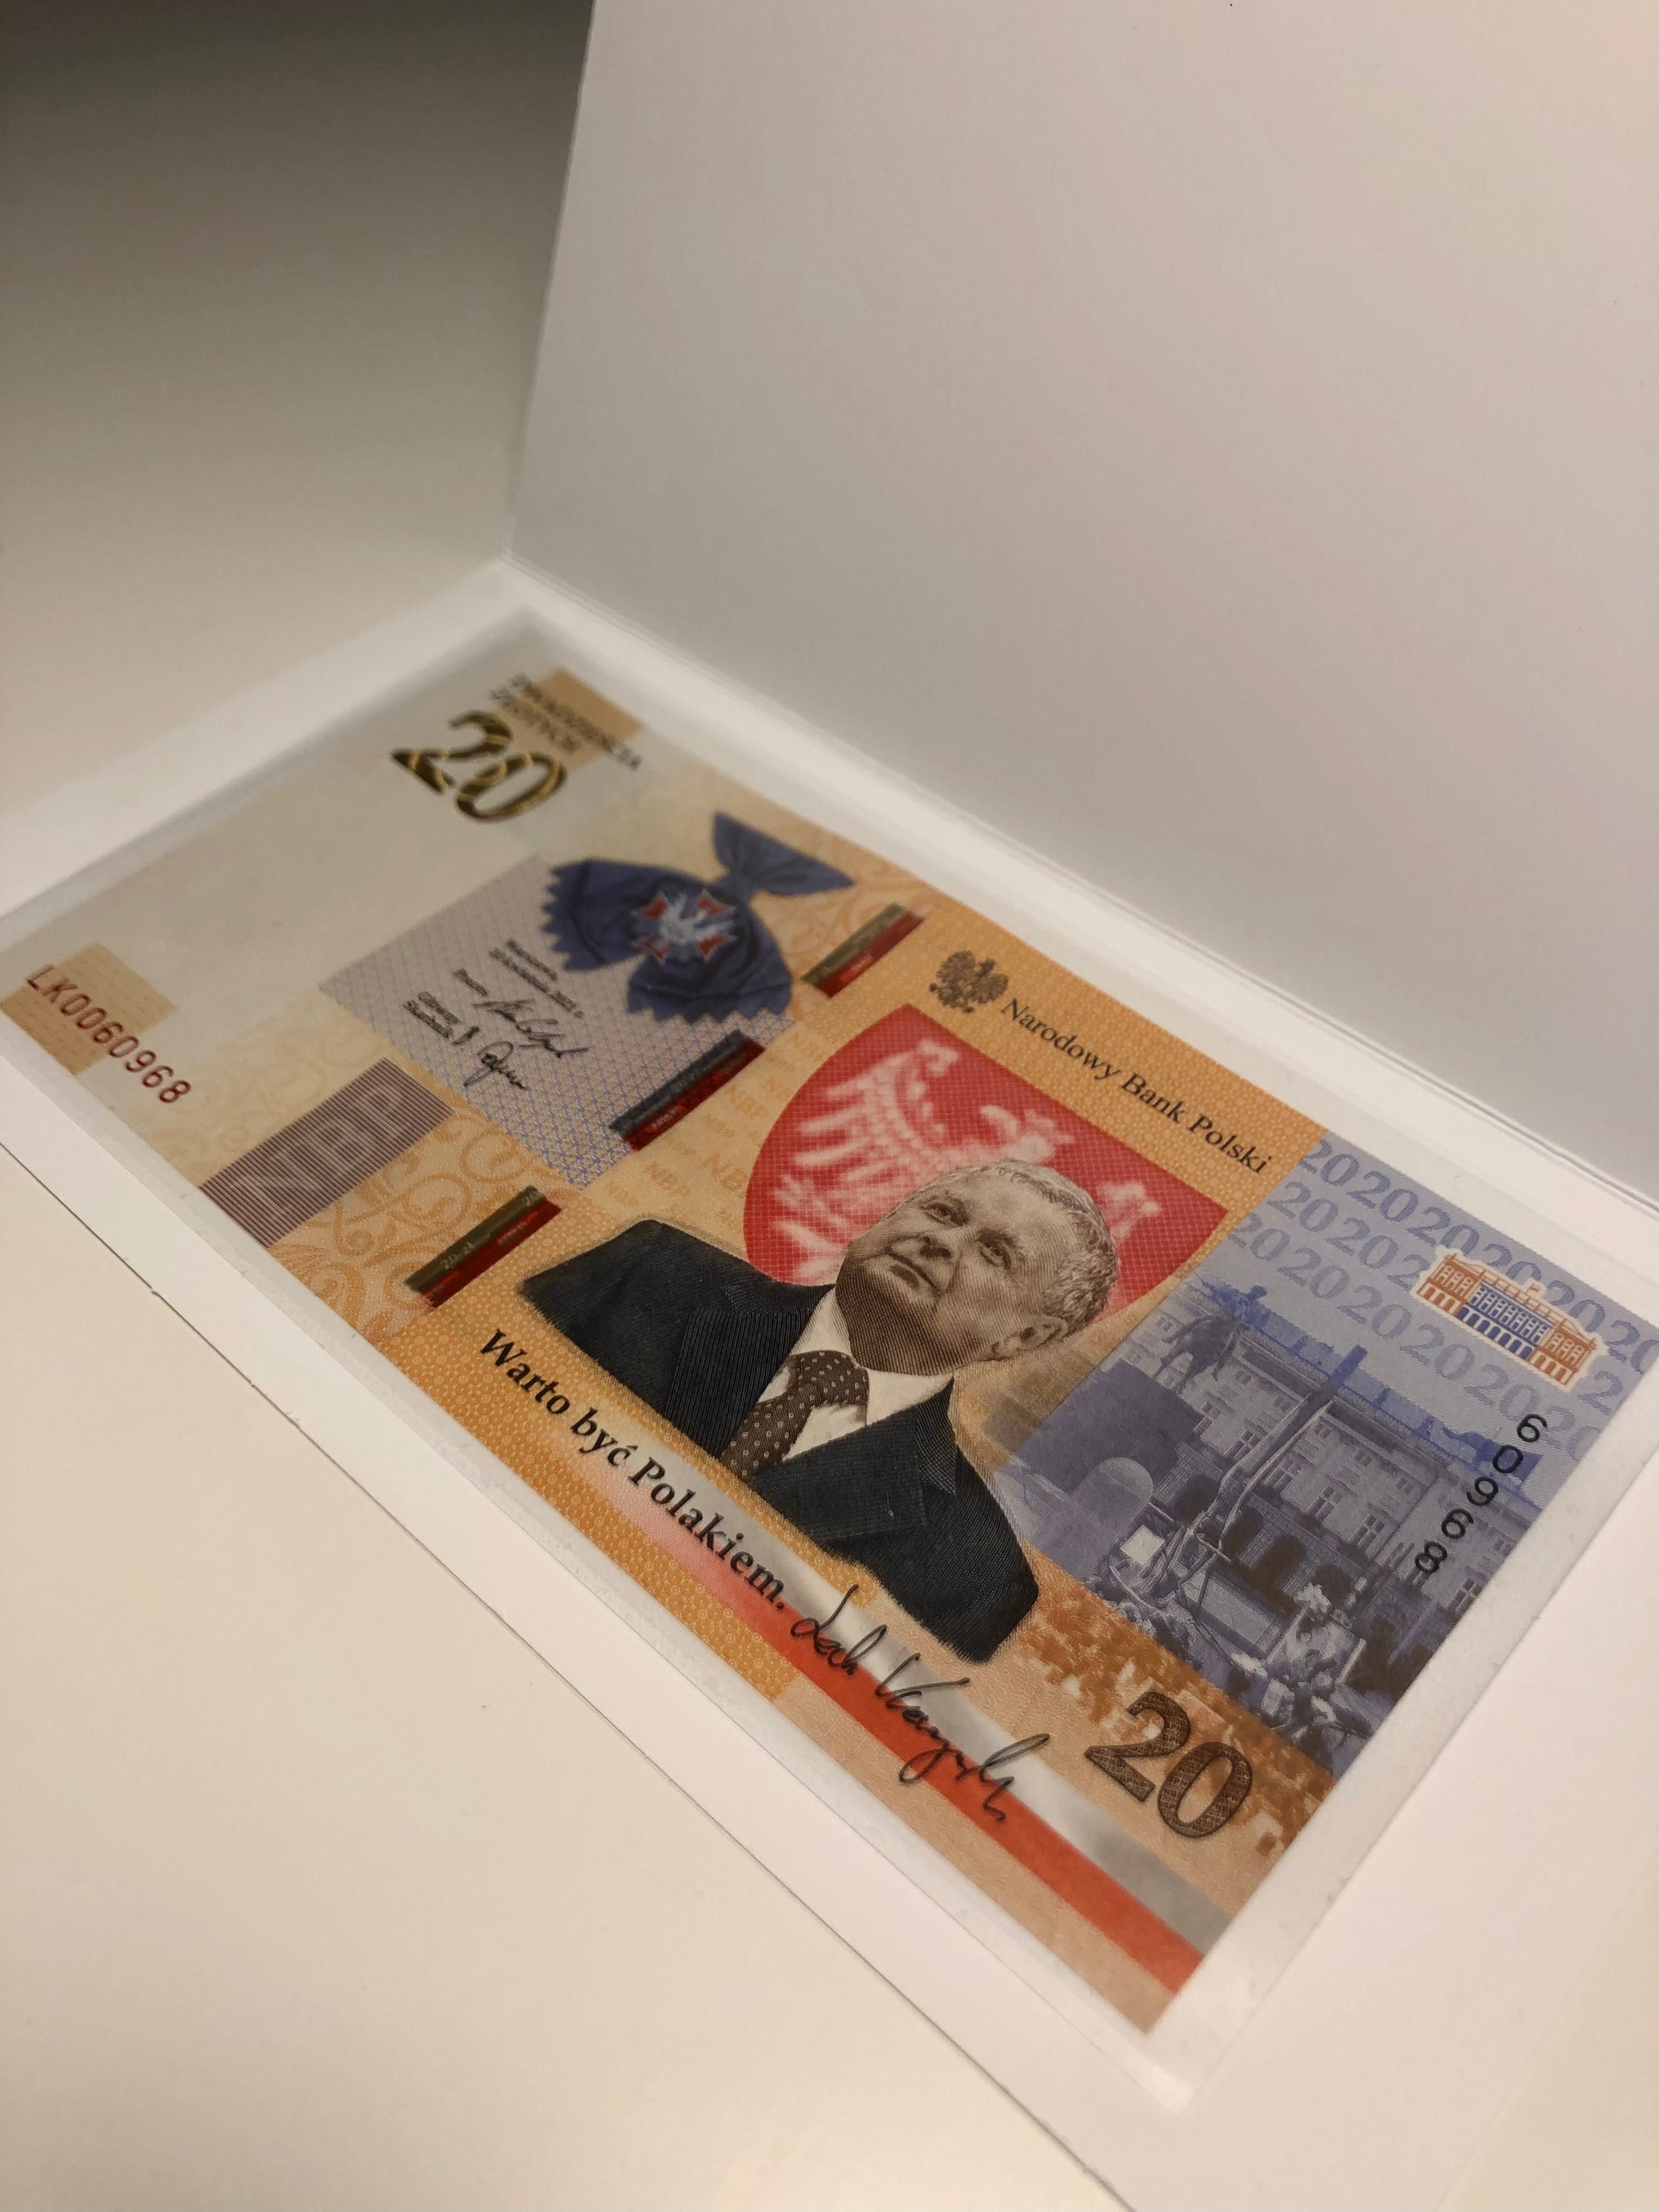 Banknot kolekcjonerski 20zł Lech Kaczyński